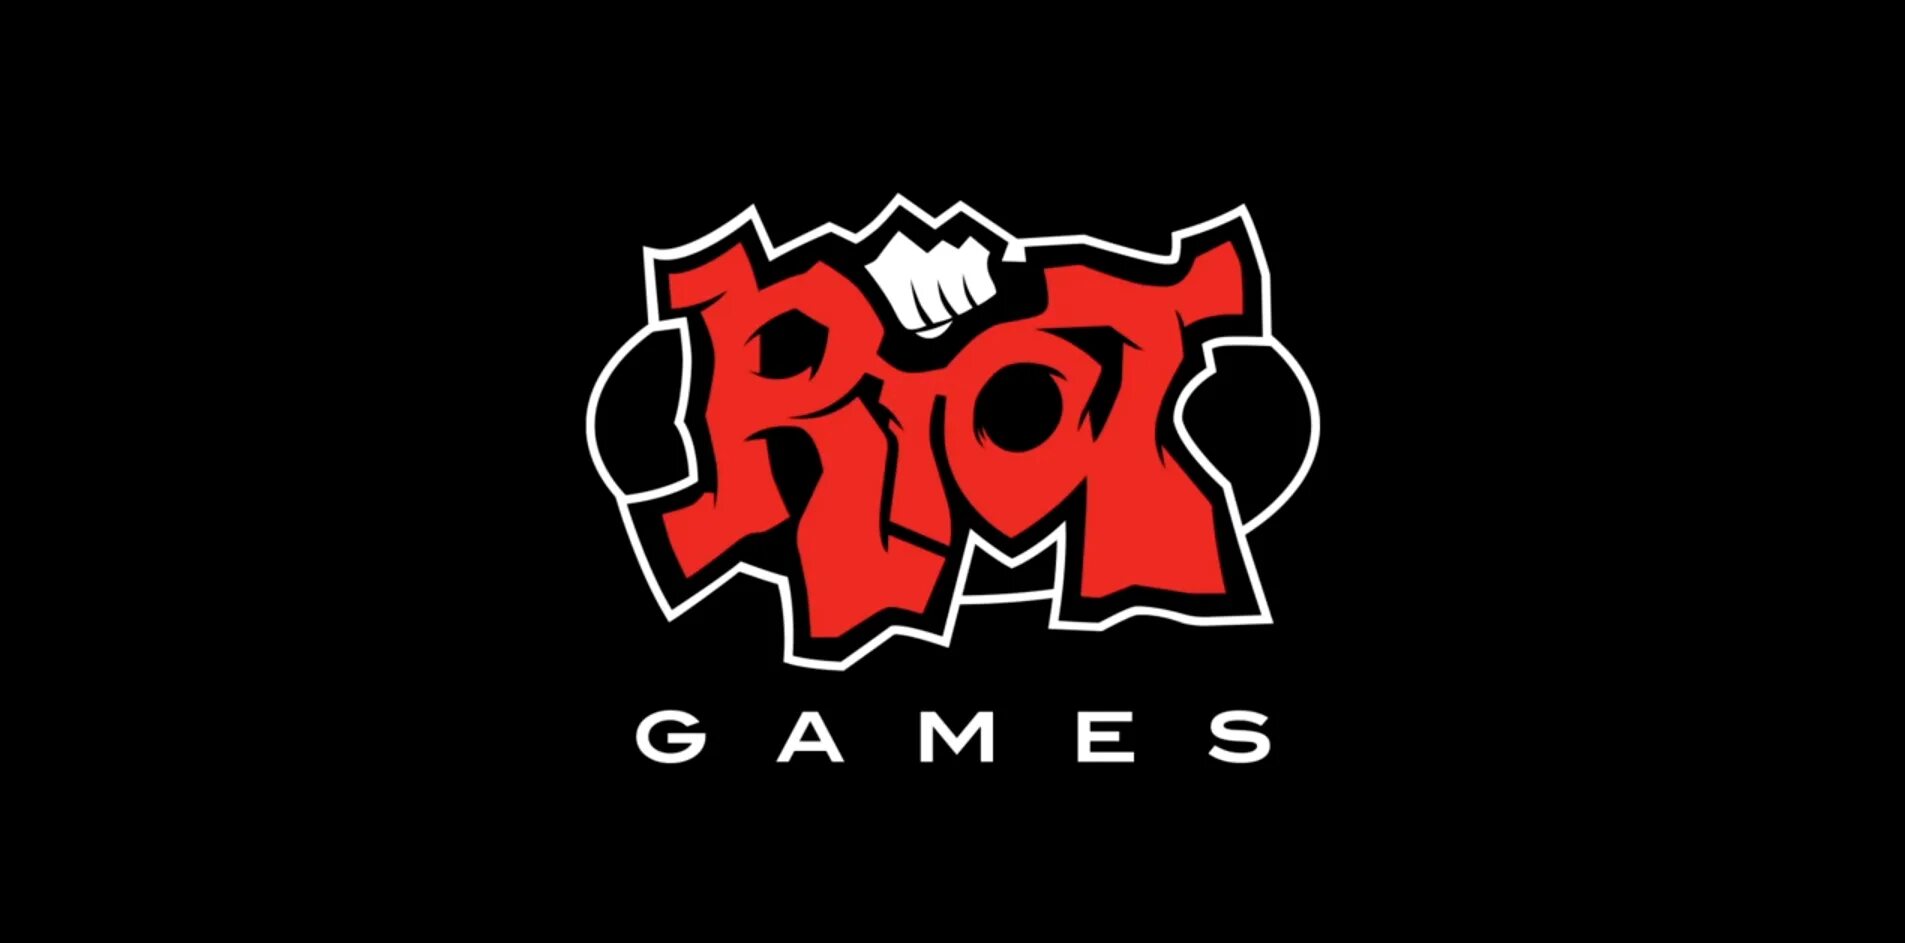 Support riotgames com. Riot games. Rinat games. Riot логотип. Логотип риот геймс.